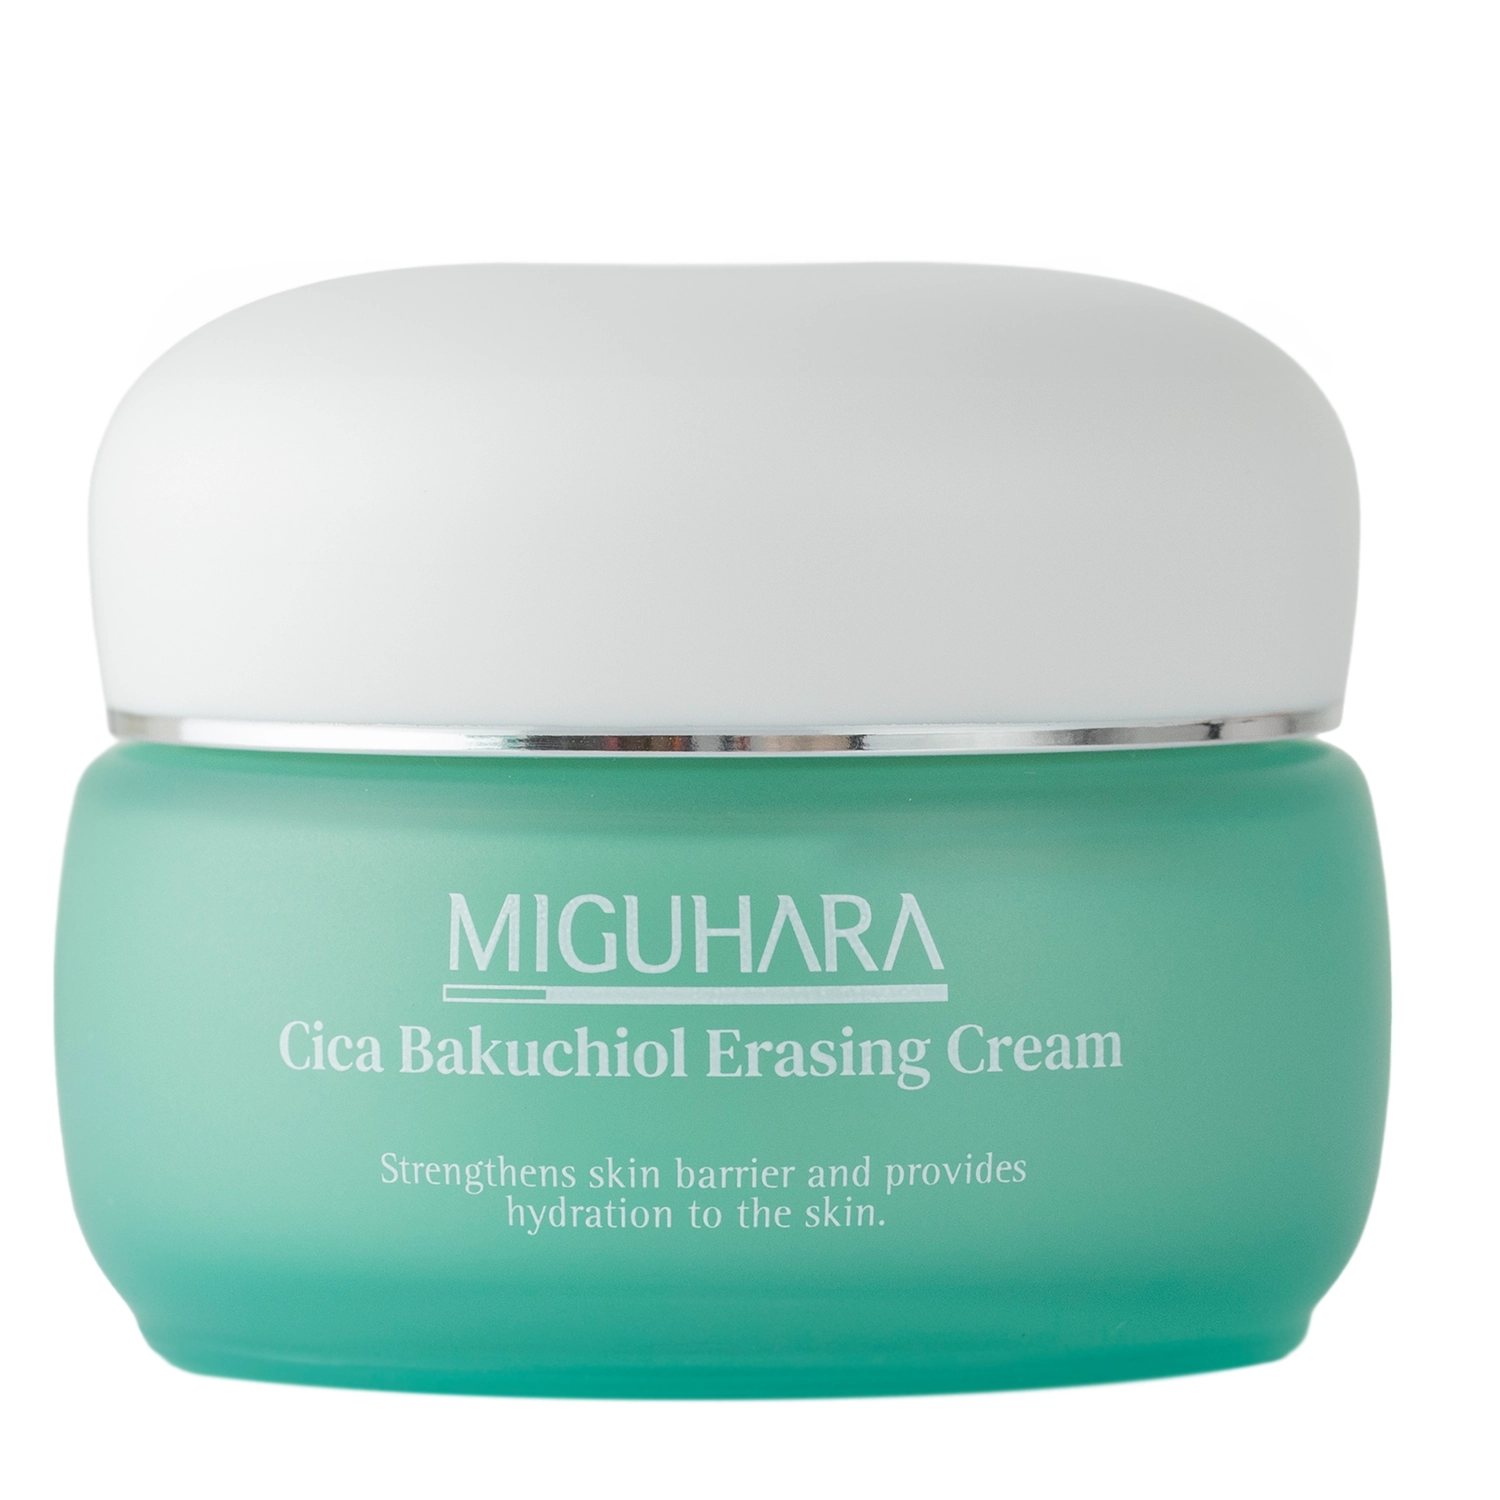 Miguhara - Cica Bakuchiol Erasing Cream - Питательный и успокаивающий крем для лица с бакучилом и центеллой азиатской - 50ml